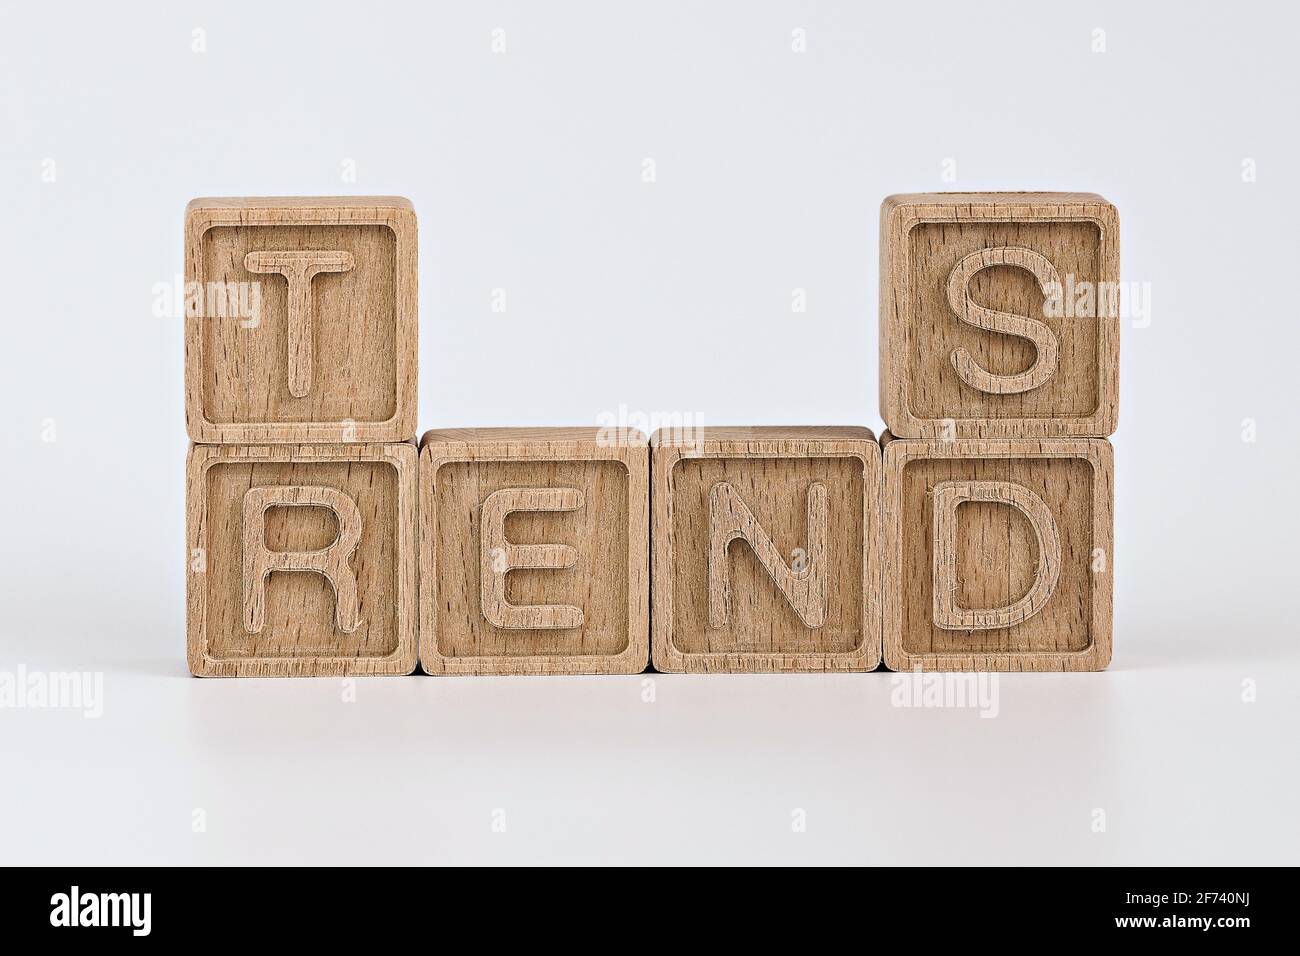 foto sul tema delle tendenze. cubi di legno con la parola 'tendenze', su sfondo bianco Foto Stock